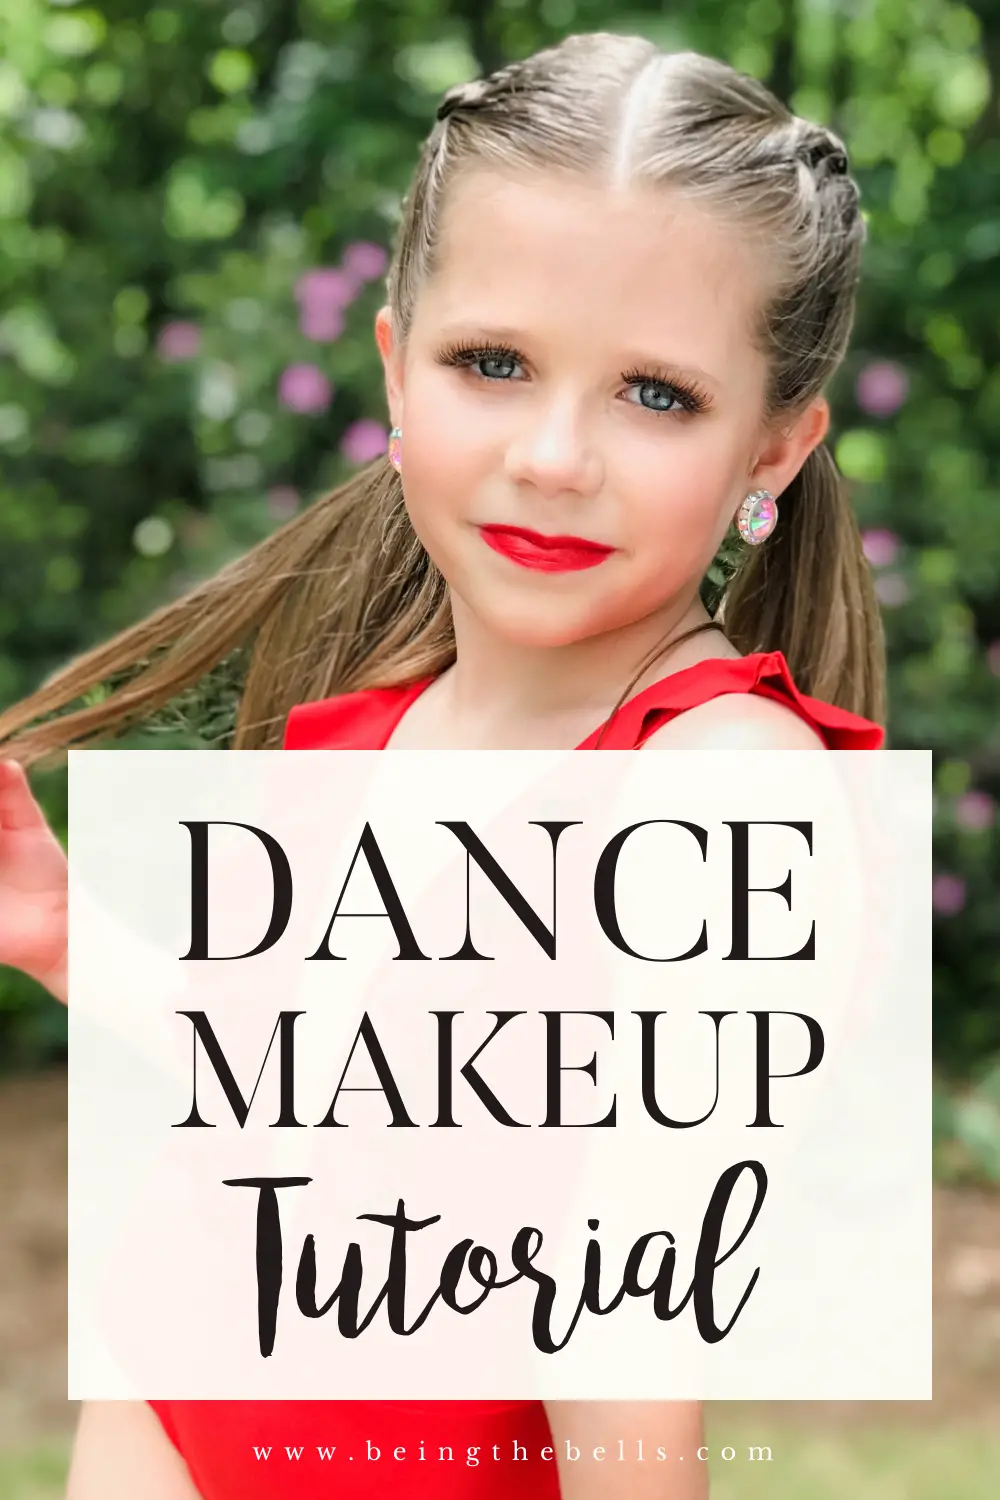 The Best Easy Dance Makeup